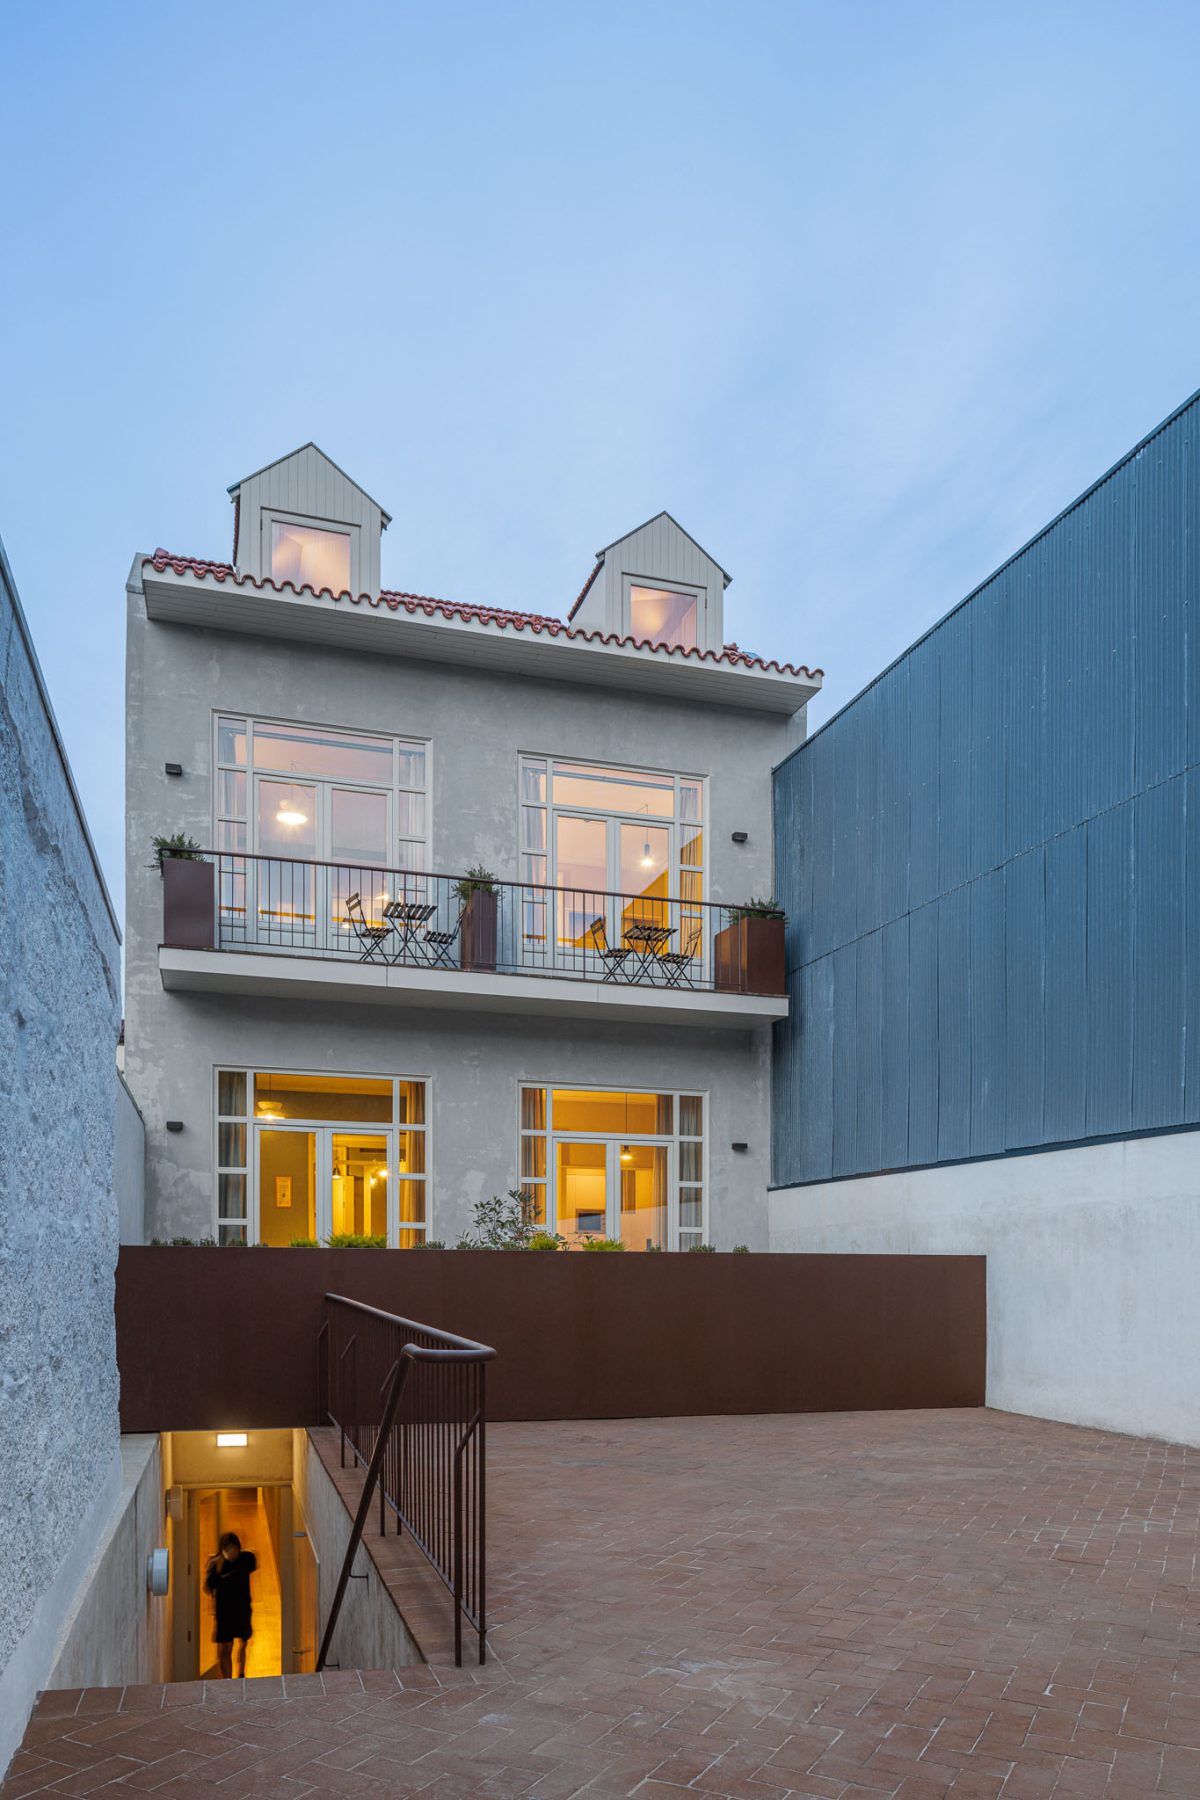 Hotel Villa Theatro em Braga com Arquitectura Arquitectos Aliado